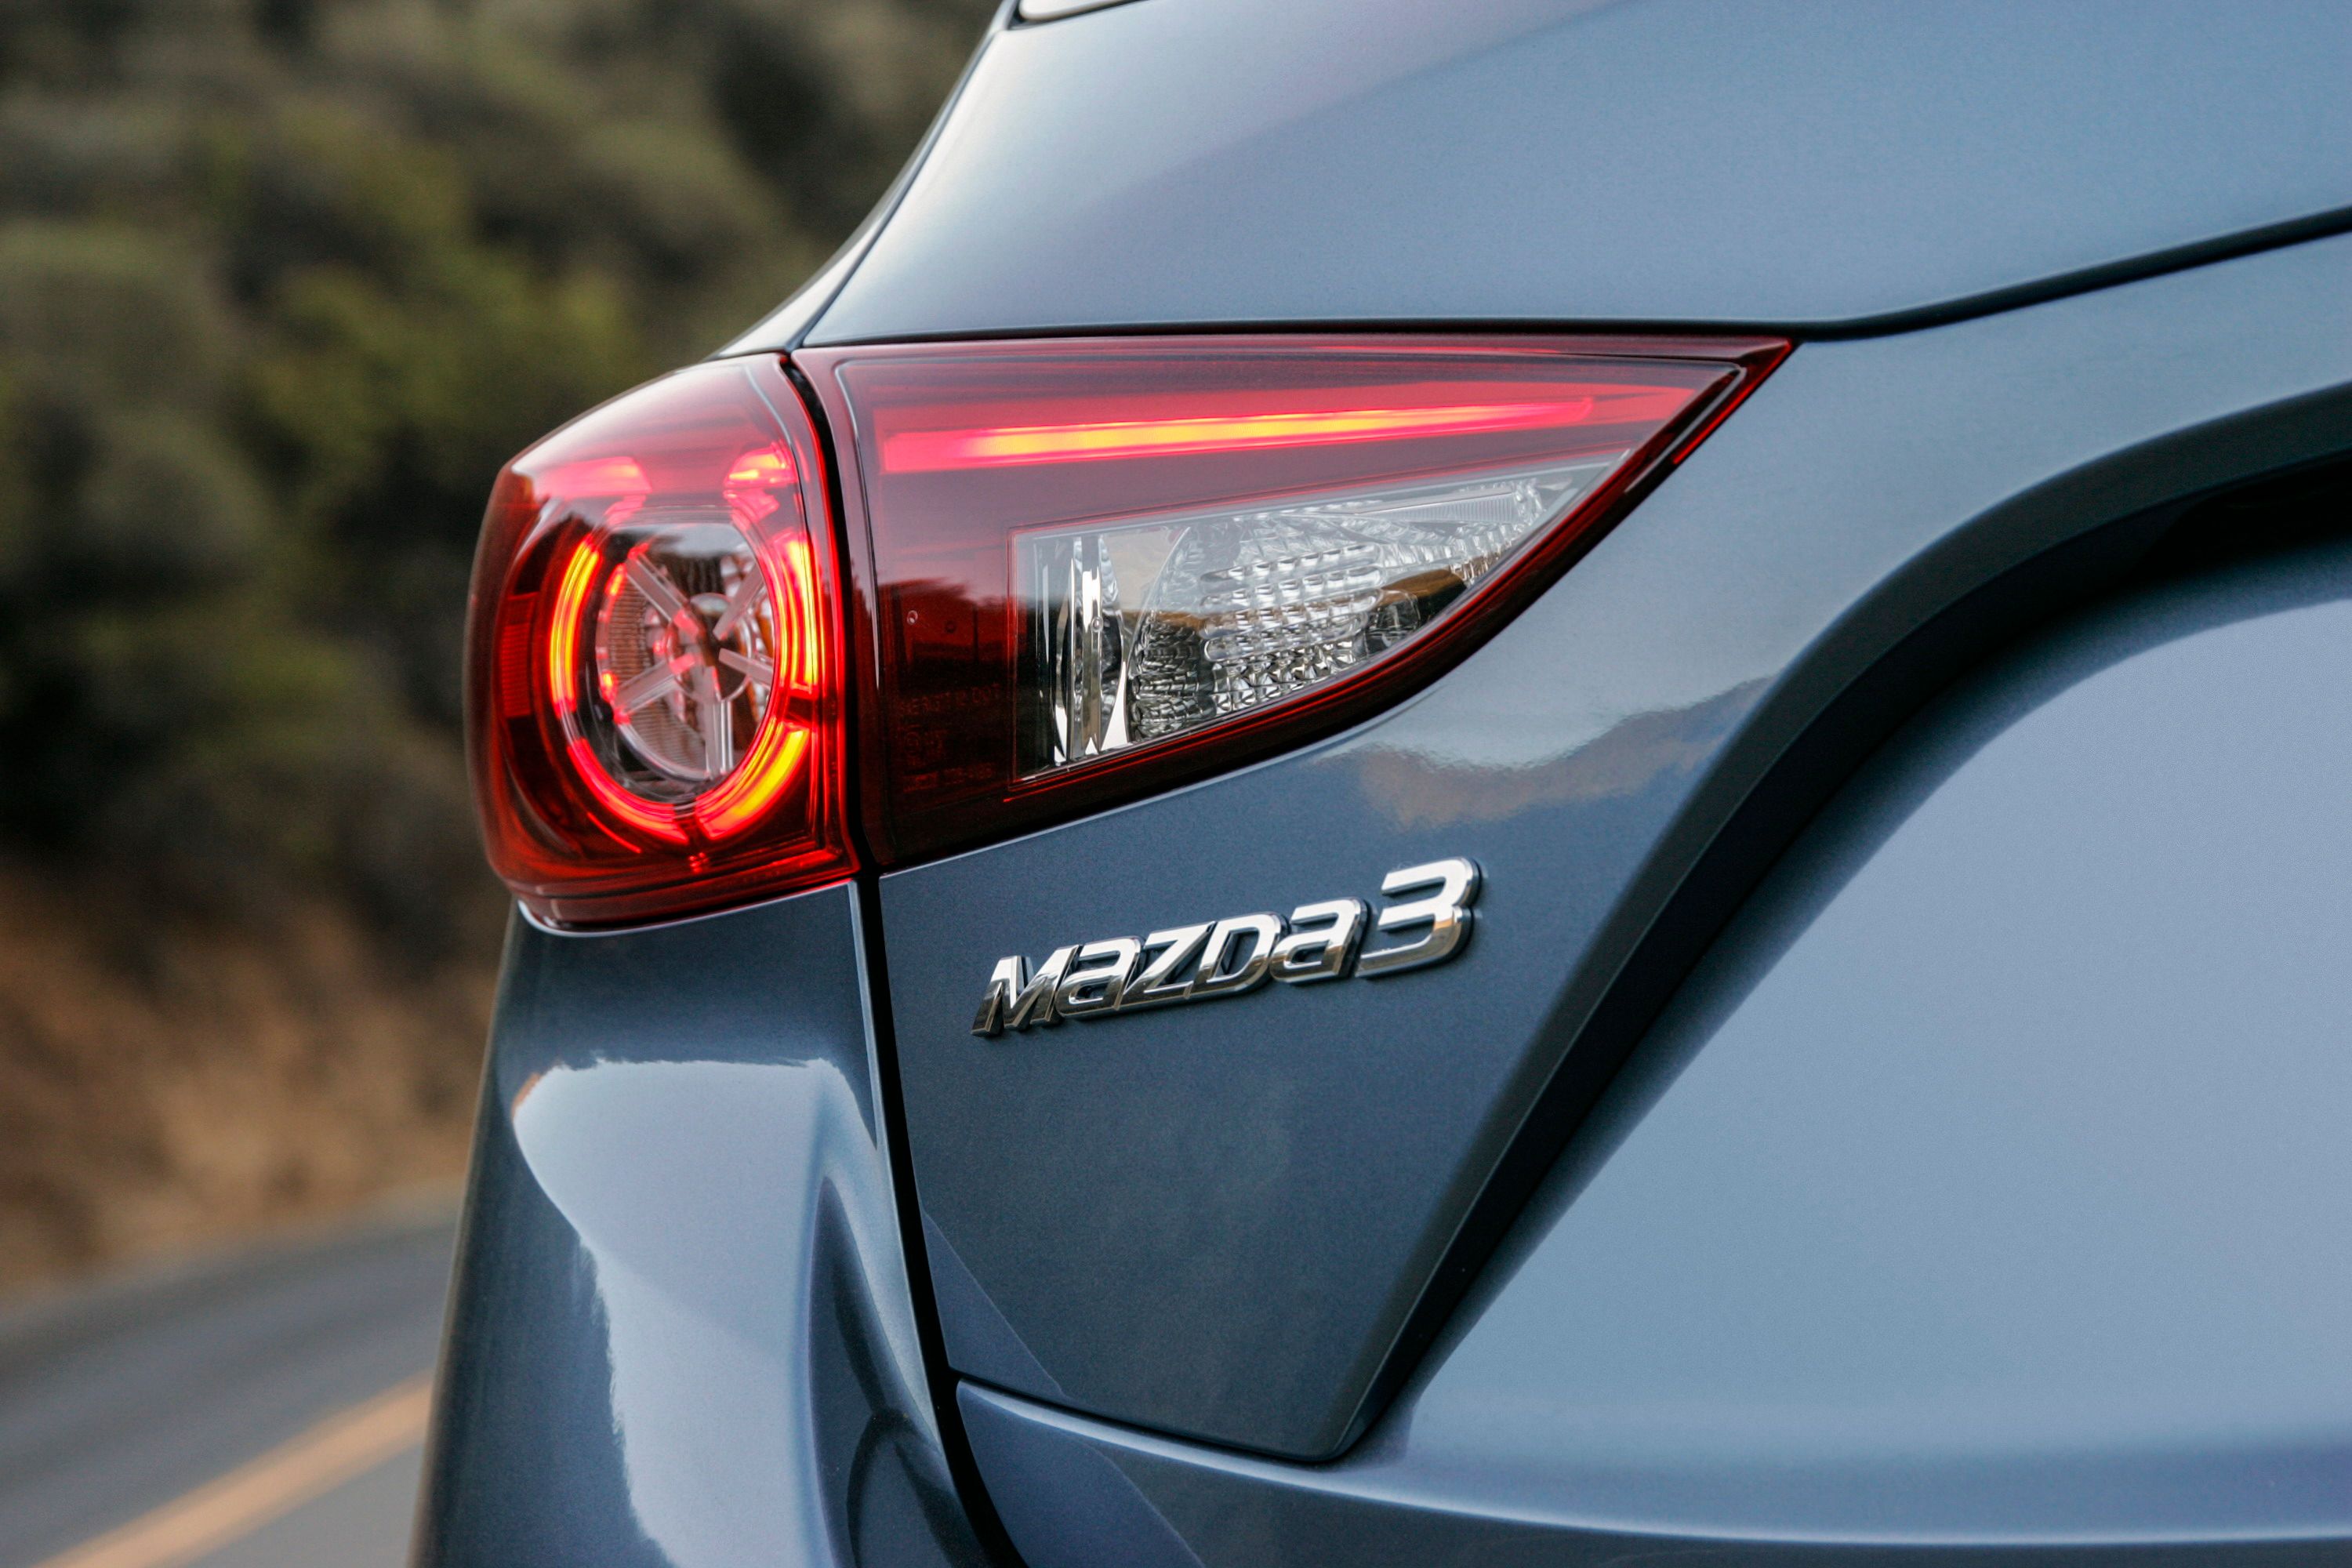 2016 - 2018 Mazda3